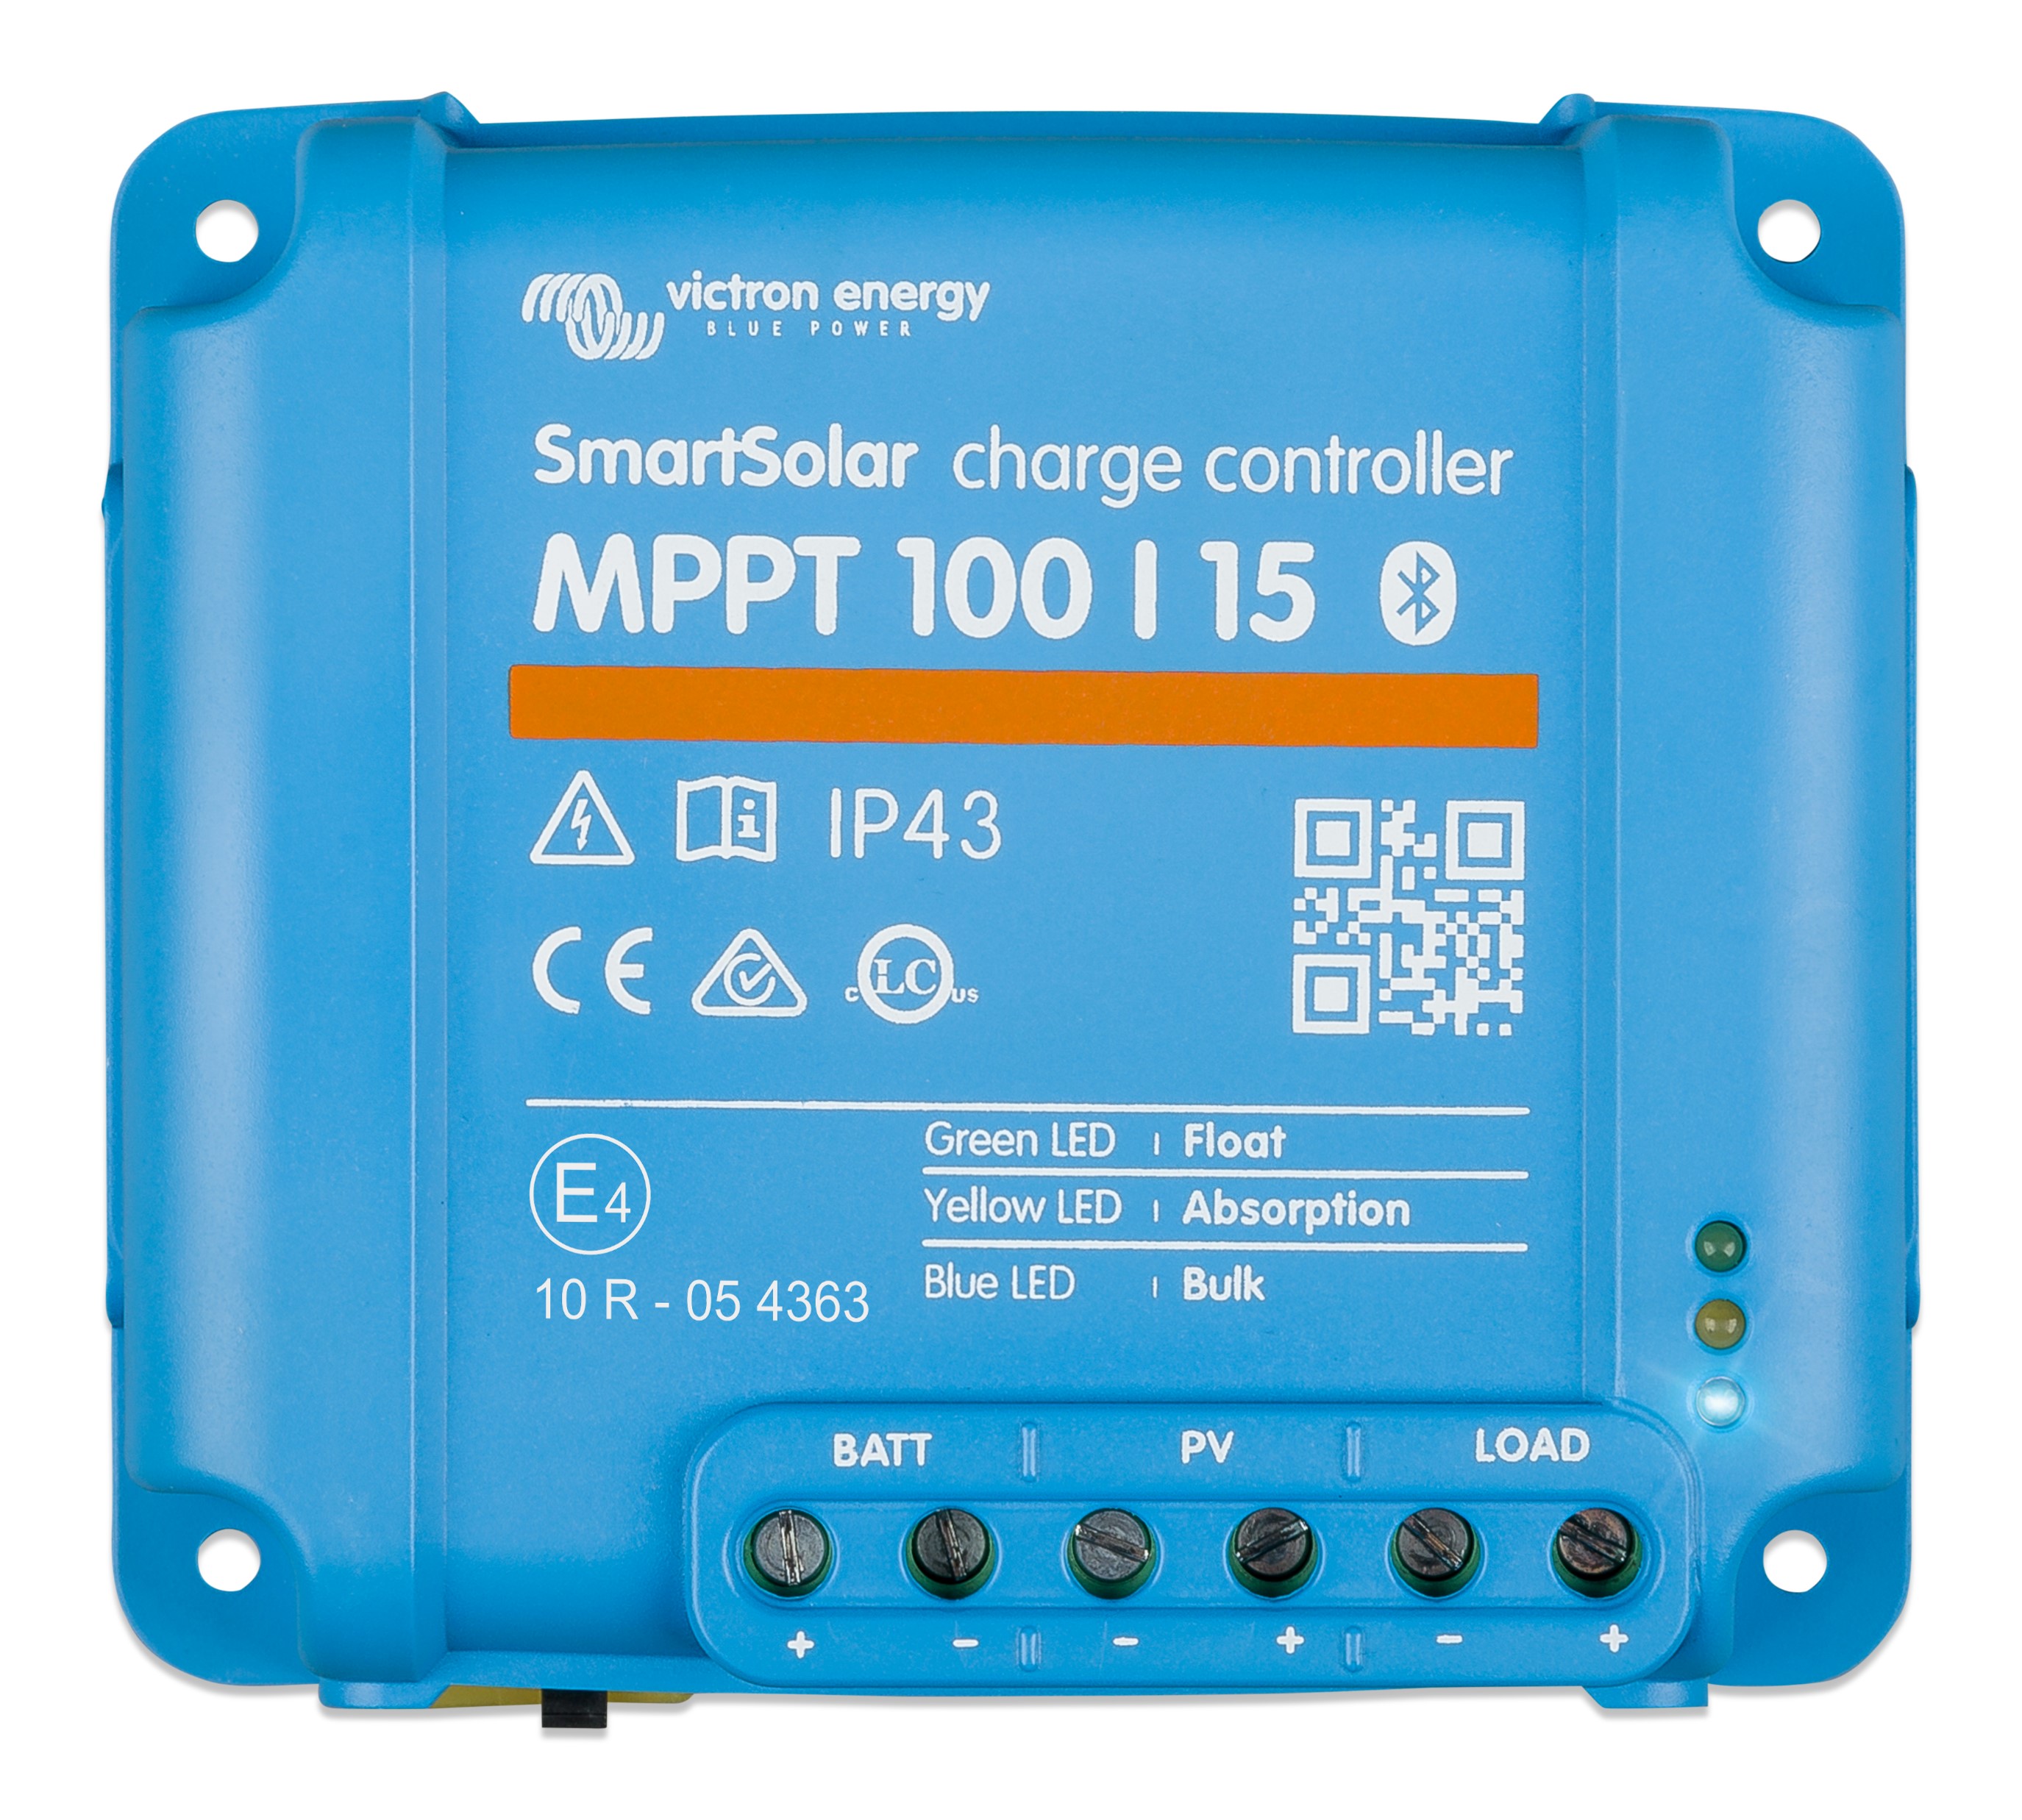 SmartSolar MPPT 75/15 12-48 V